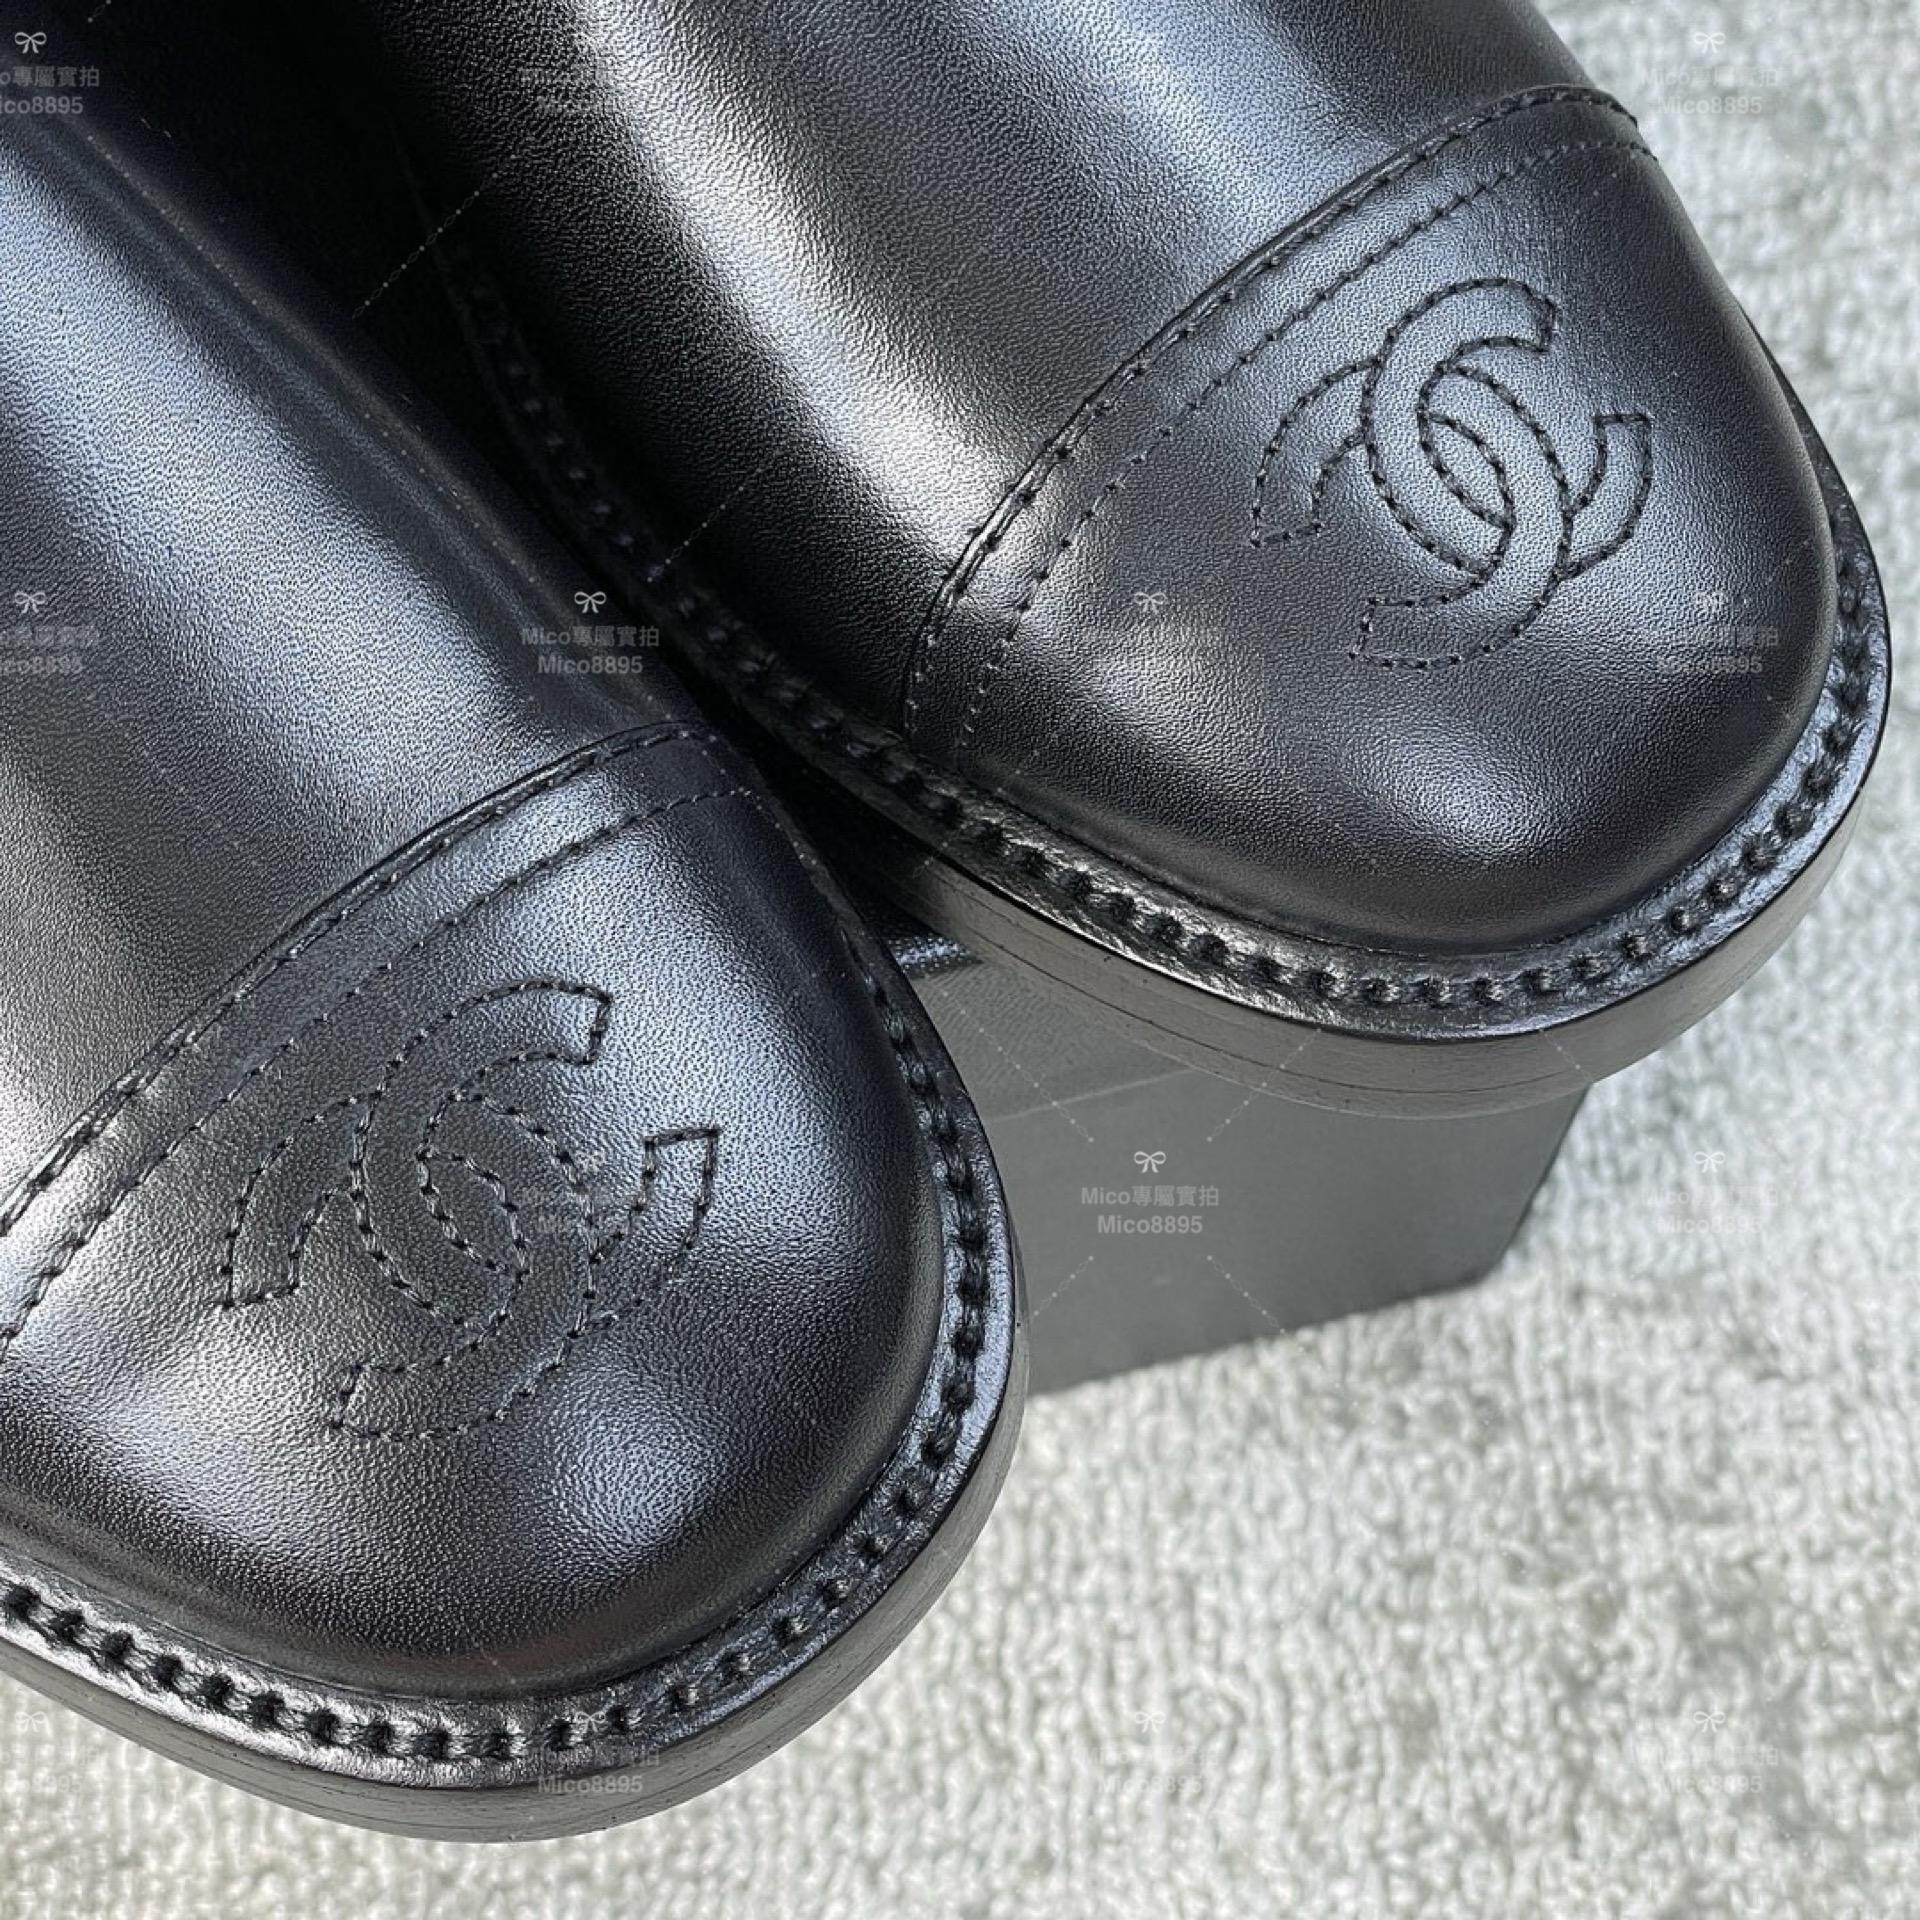 Chanel 經典耐看 英倫風格 長靴/靴子/ SIZE 35-39(可訂製40）